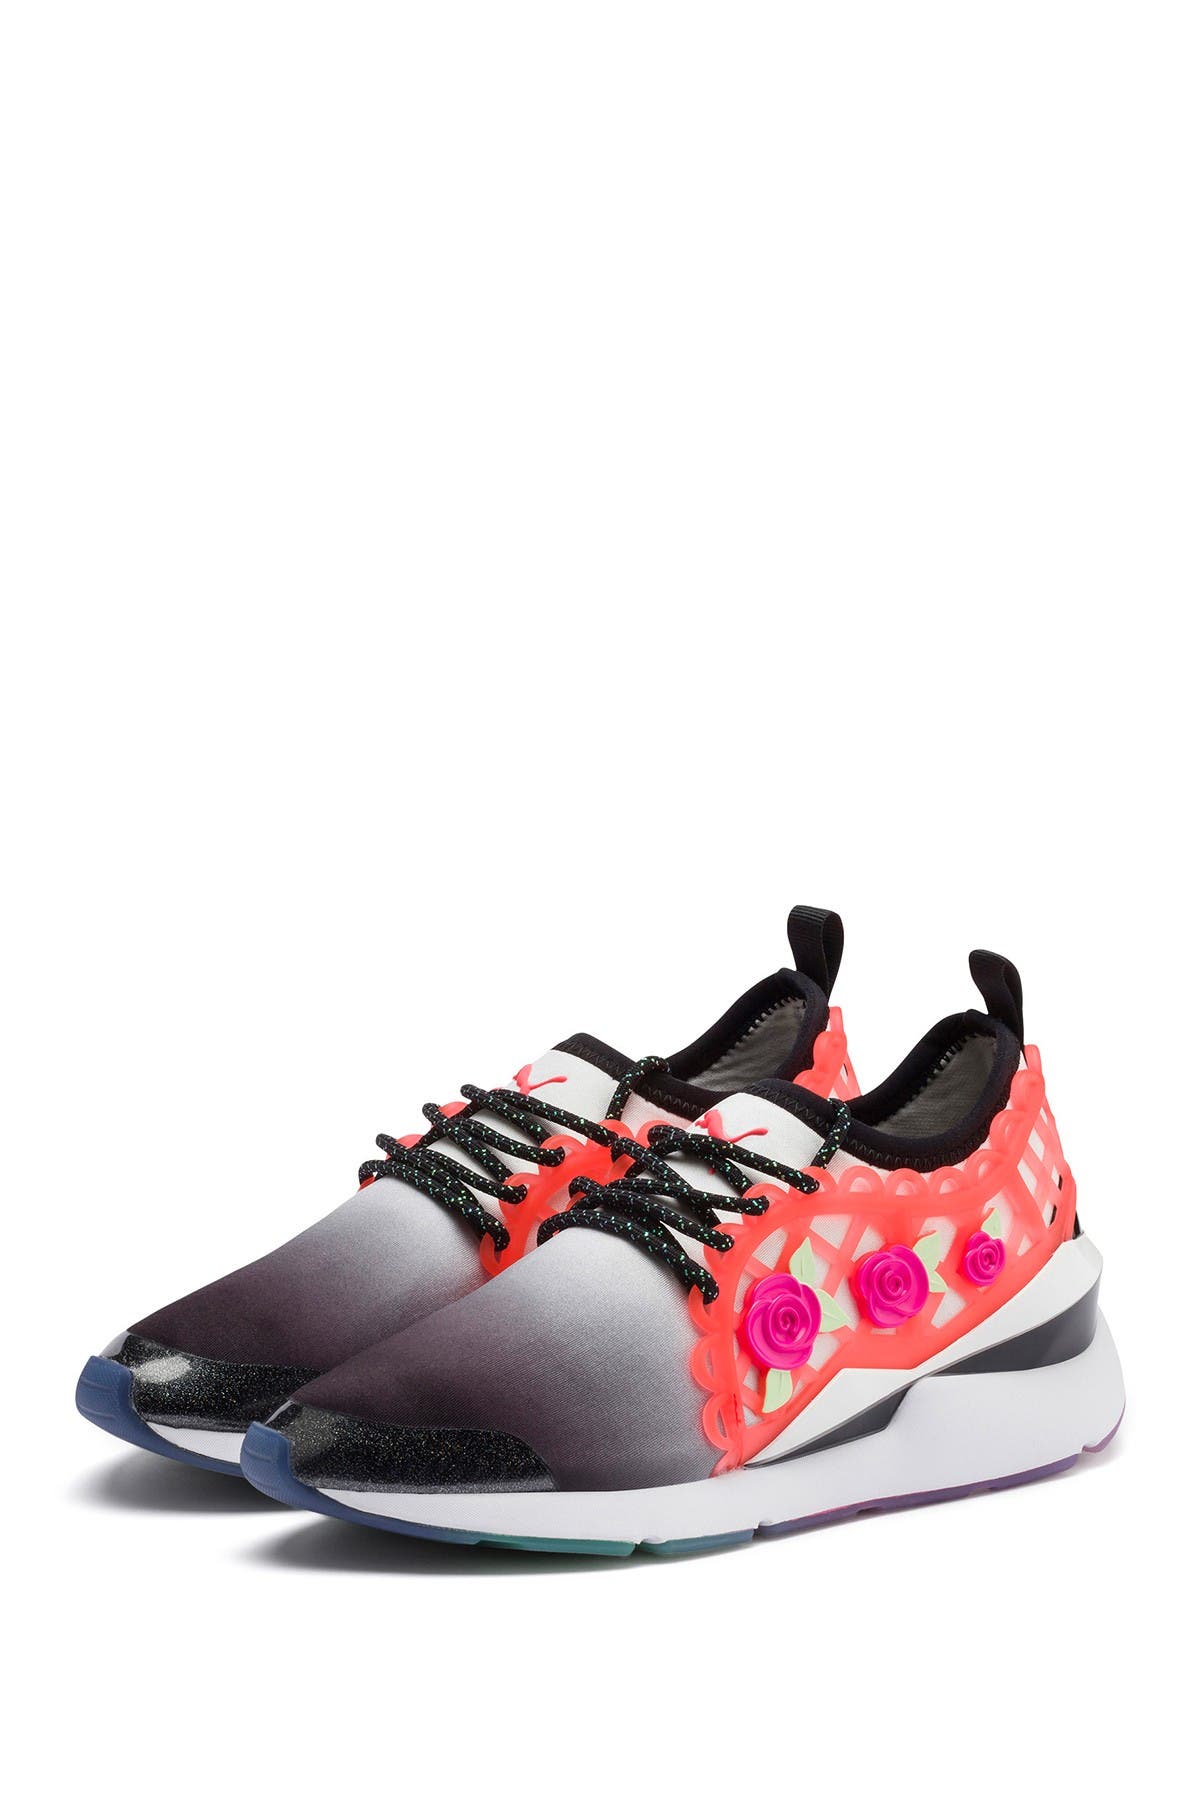 sophia webster puma sneakers